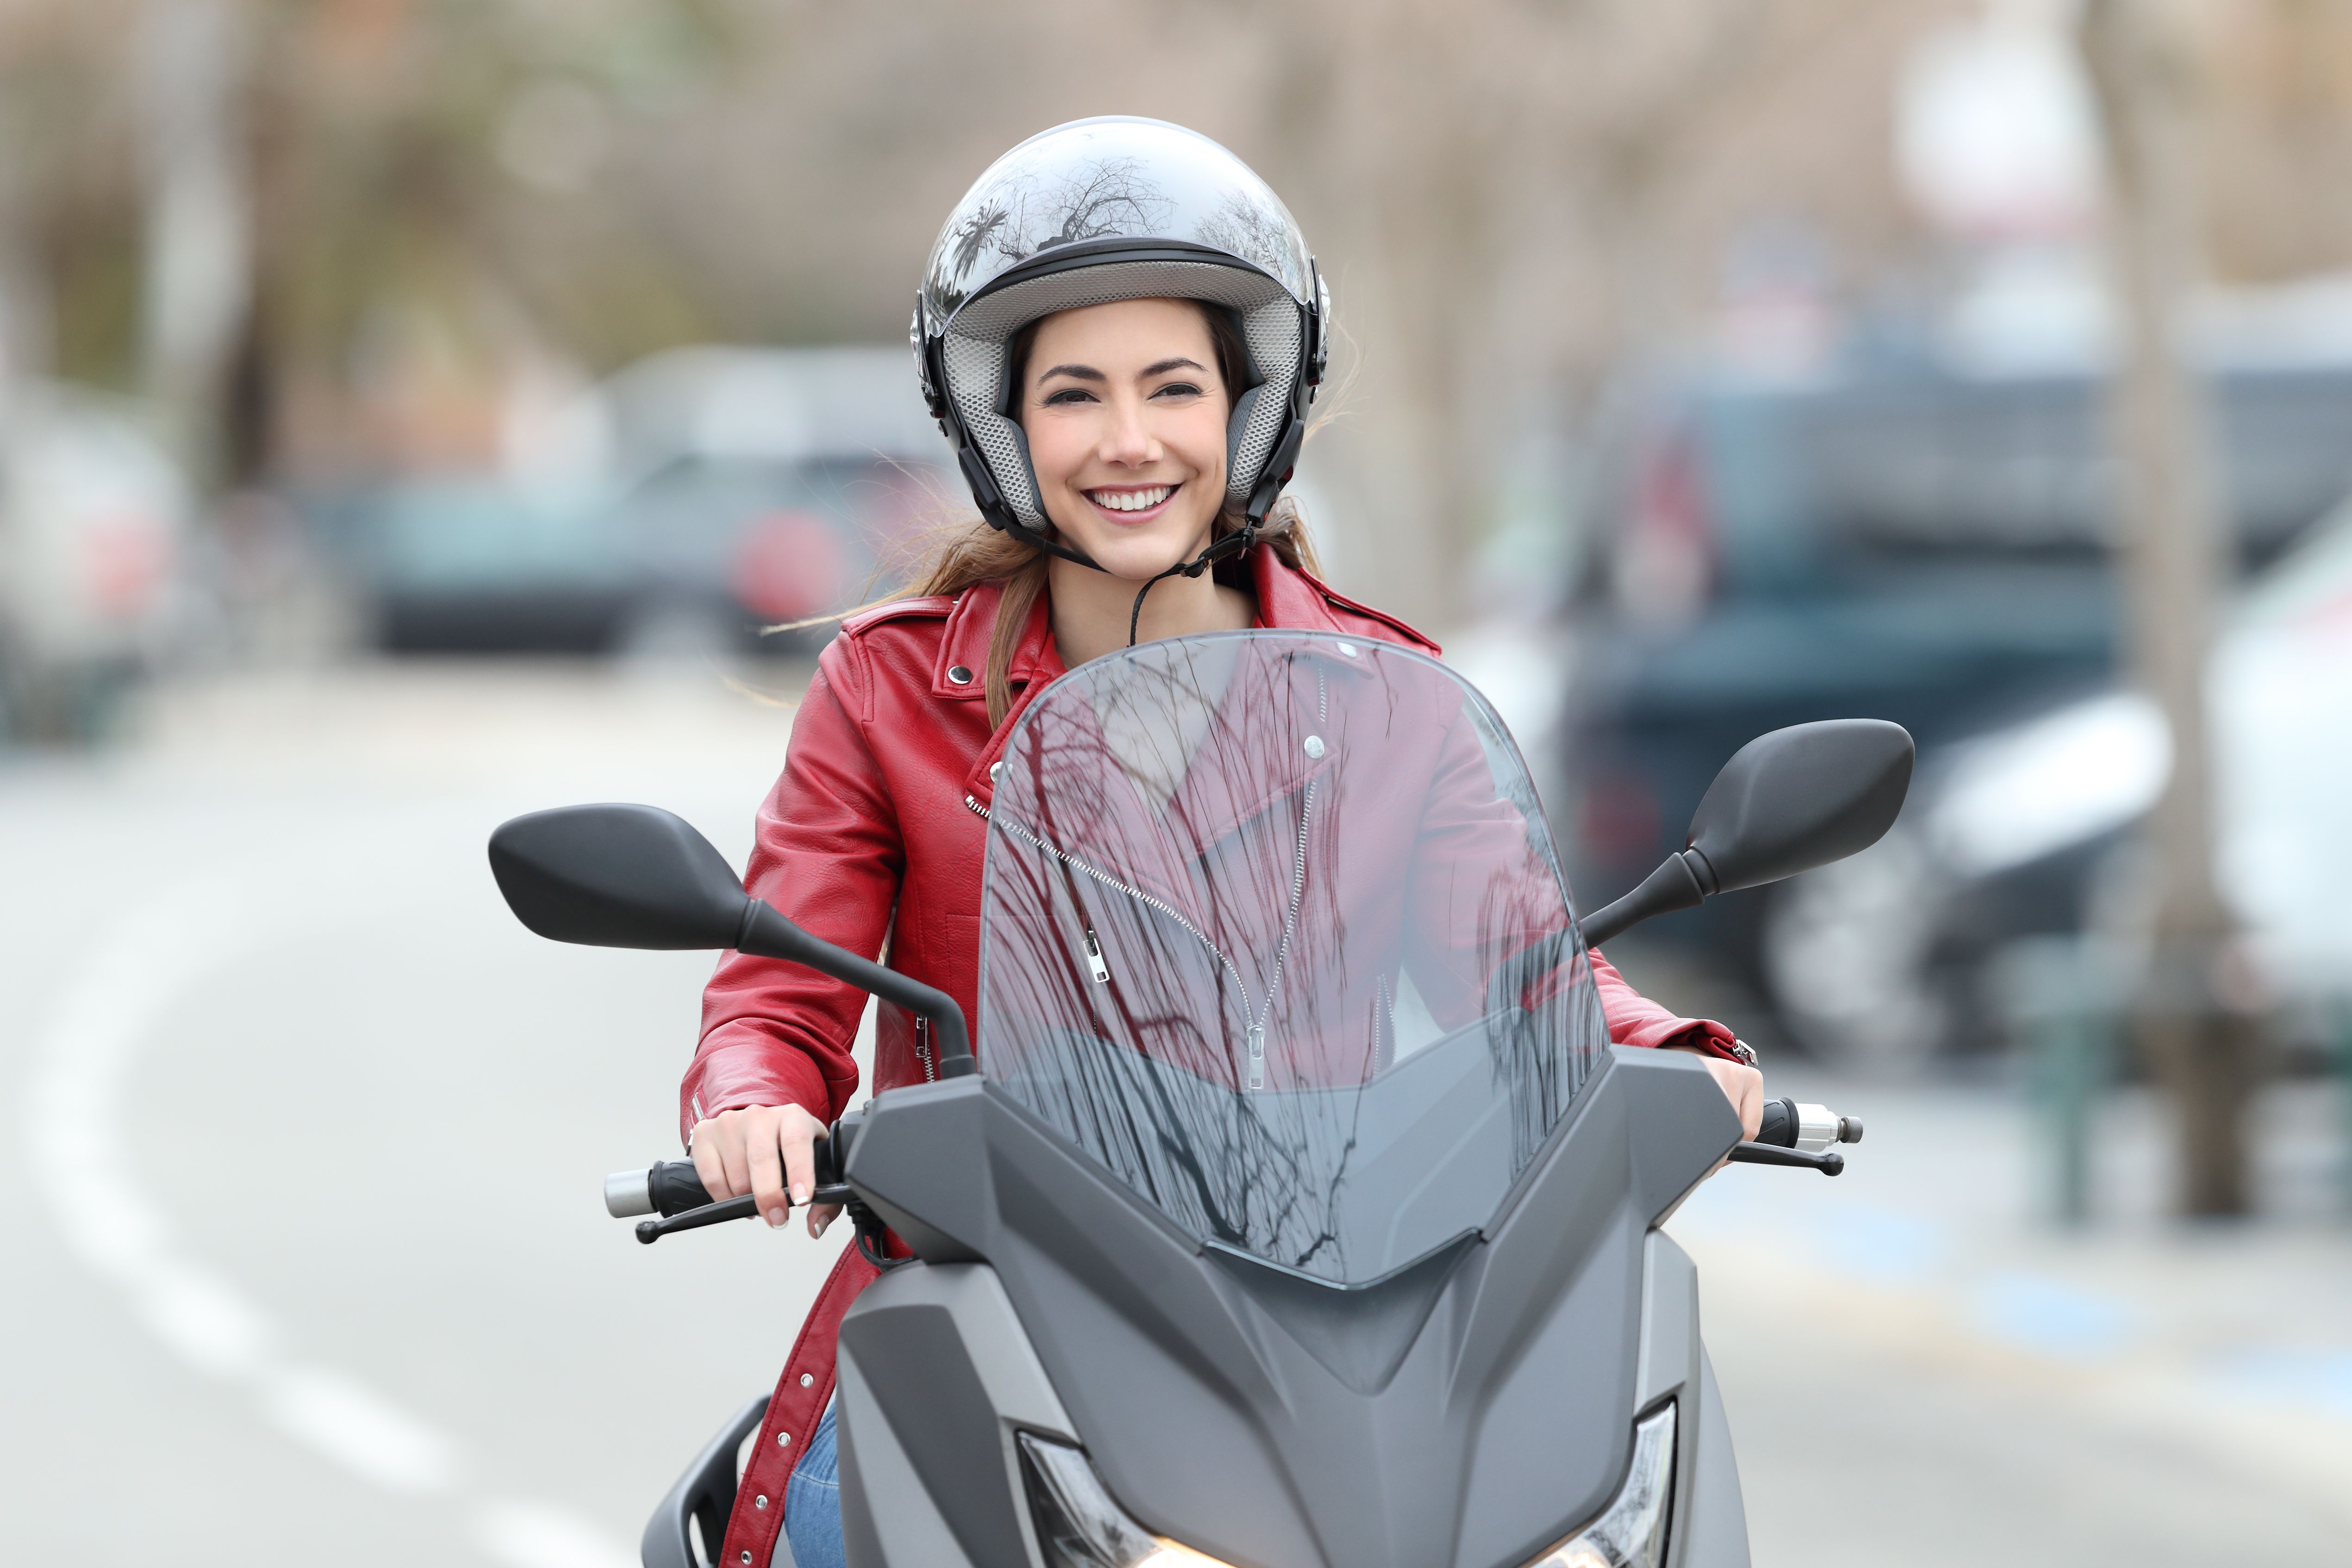 HUSK: Når du øver på moped/scooter må du blant annet kunne vise at du har fullført trafikalt grunnkurs. (Foto: Colourbox)